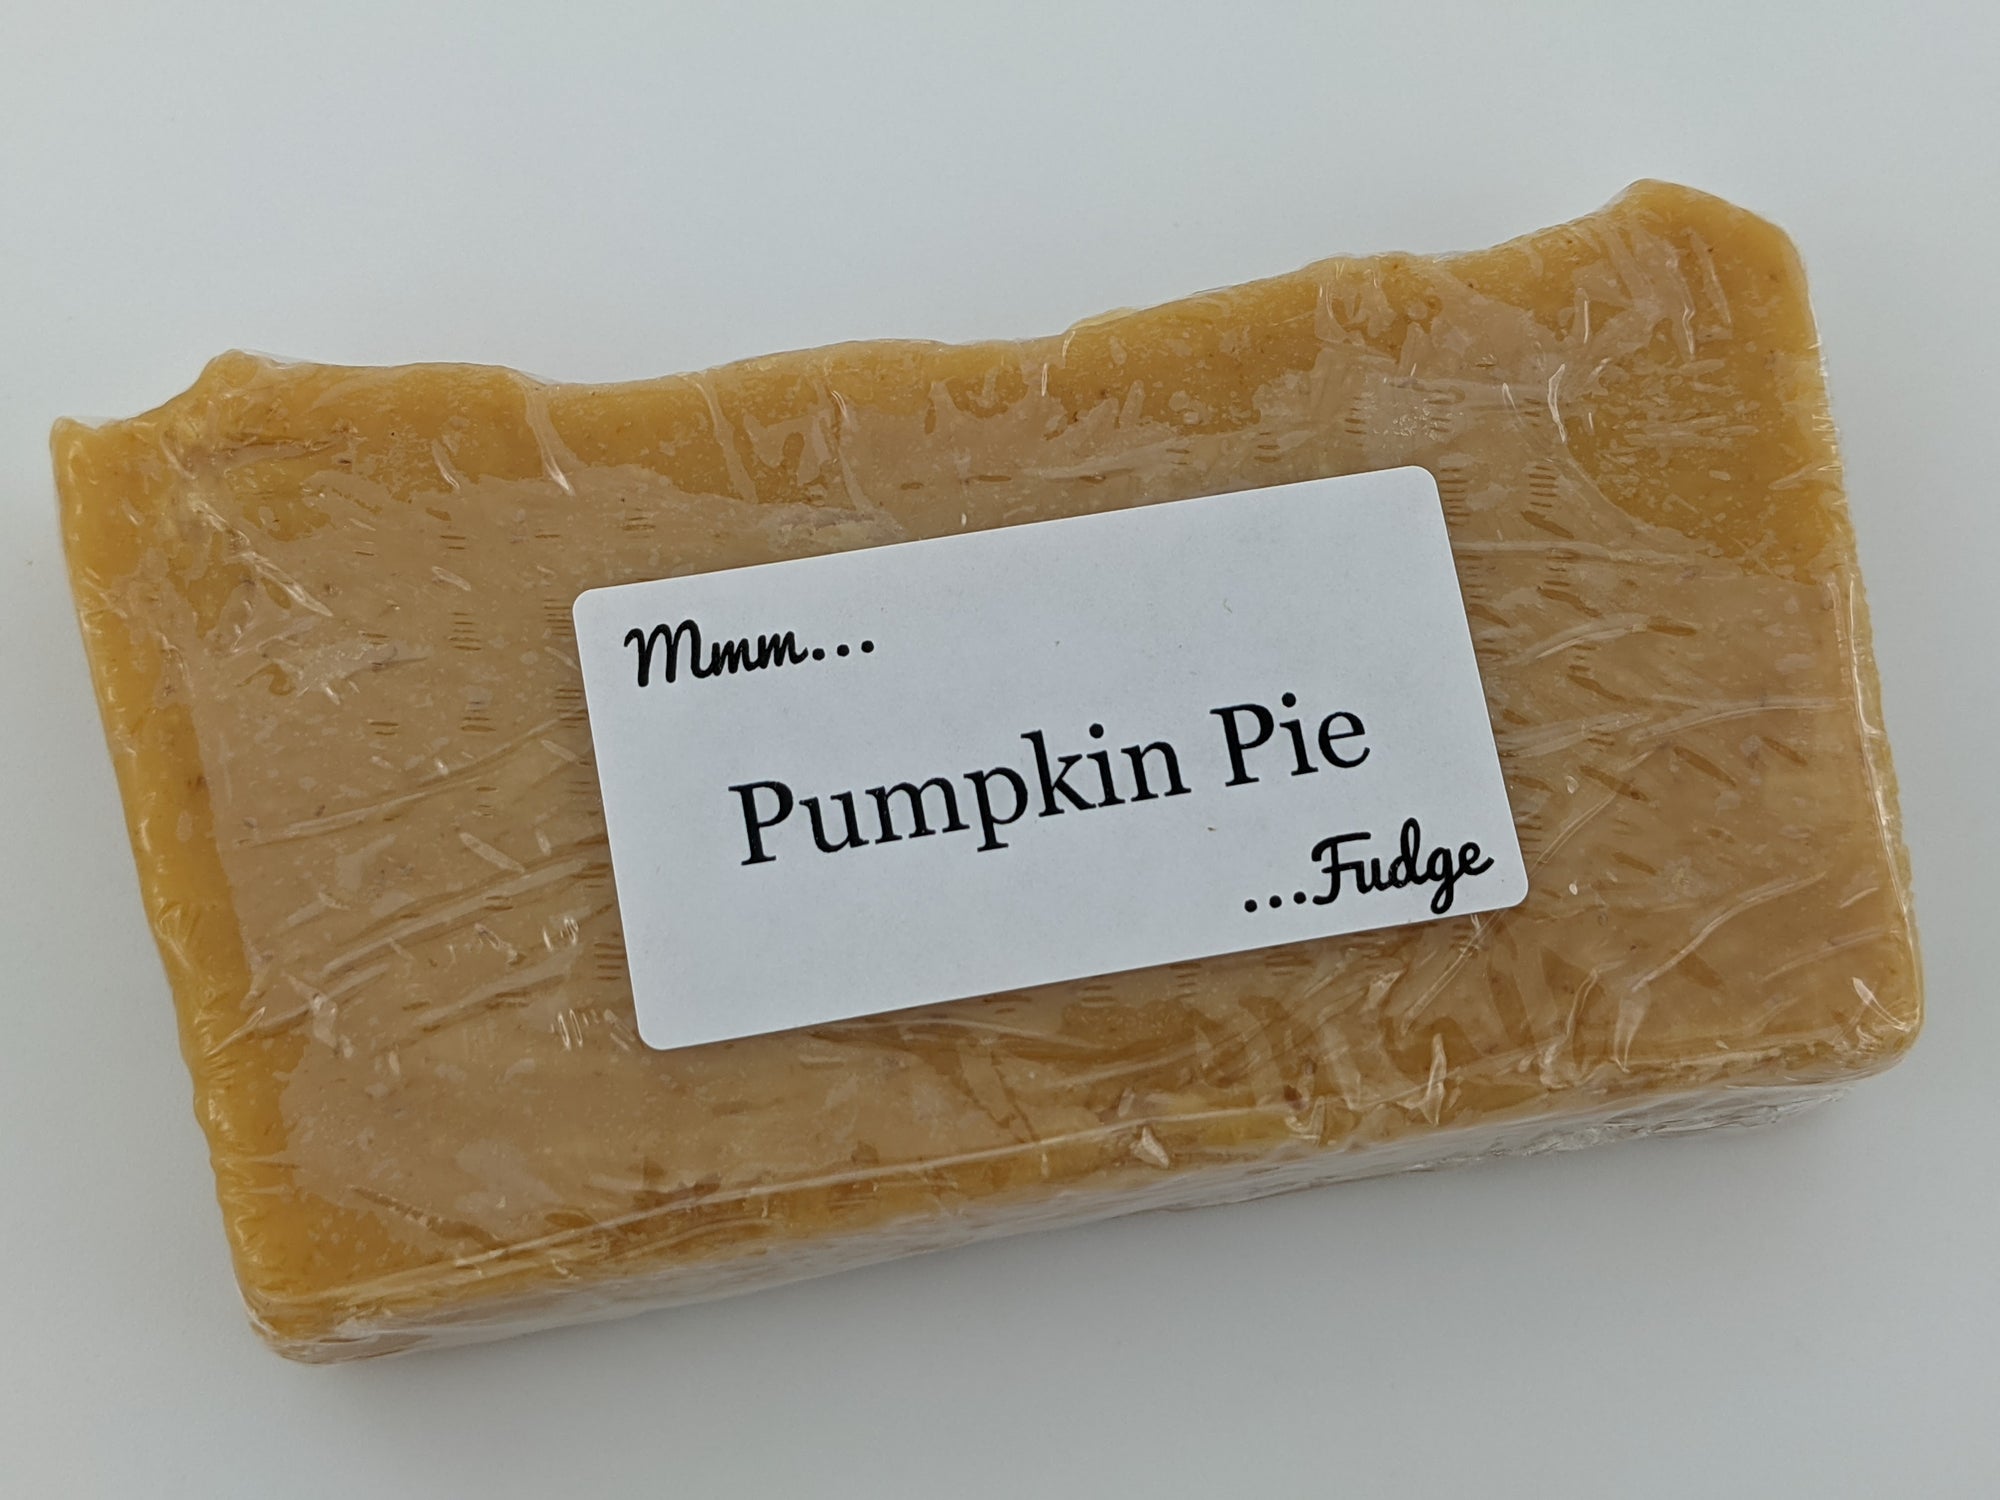 Fudge: Pumpkin Pie